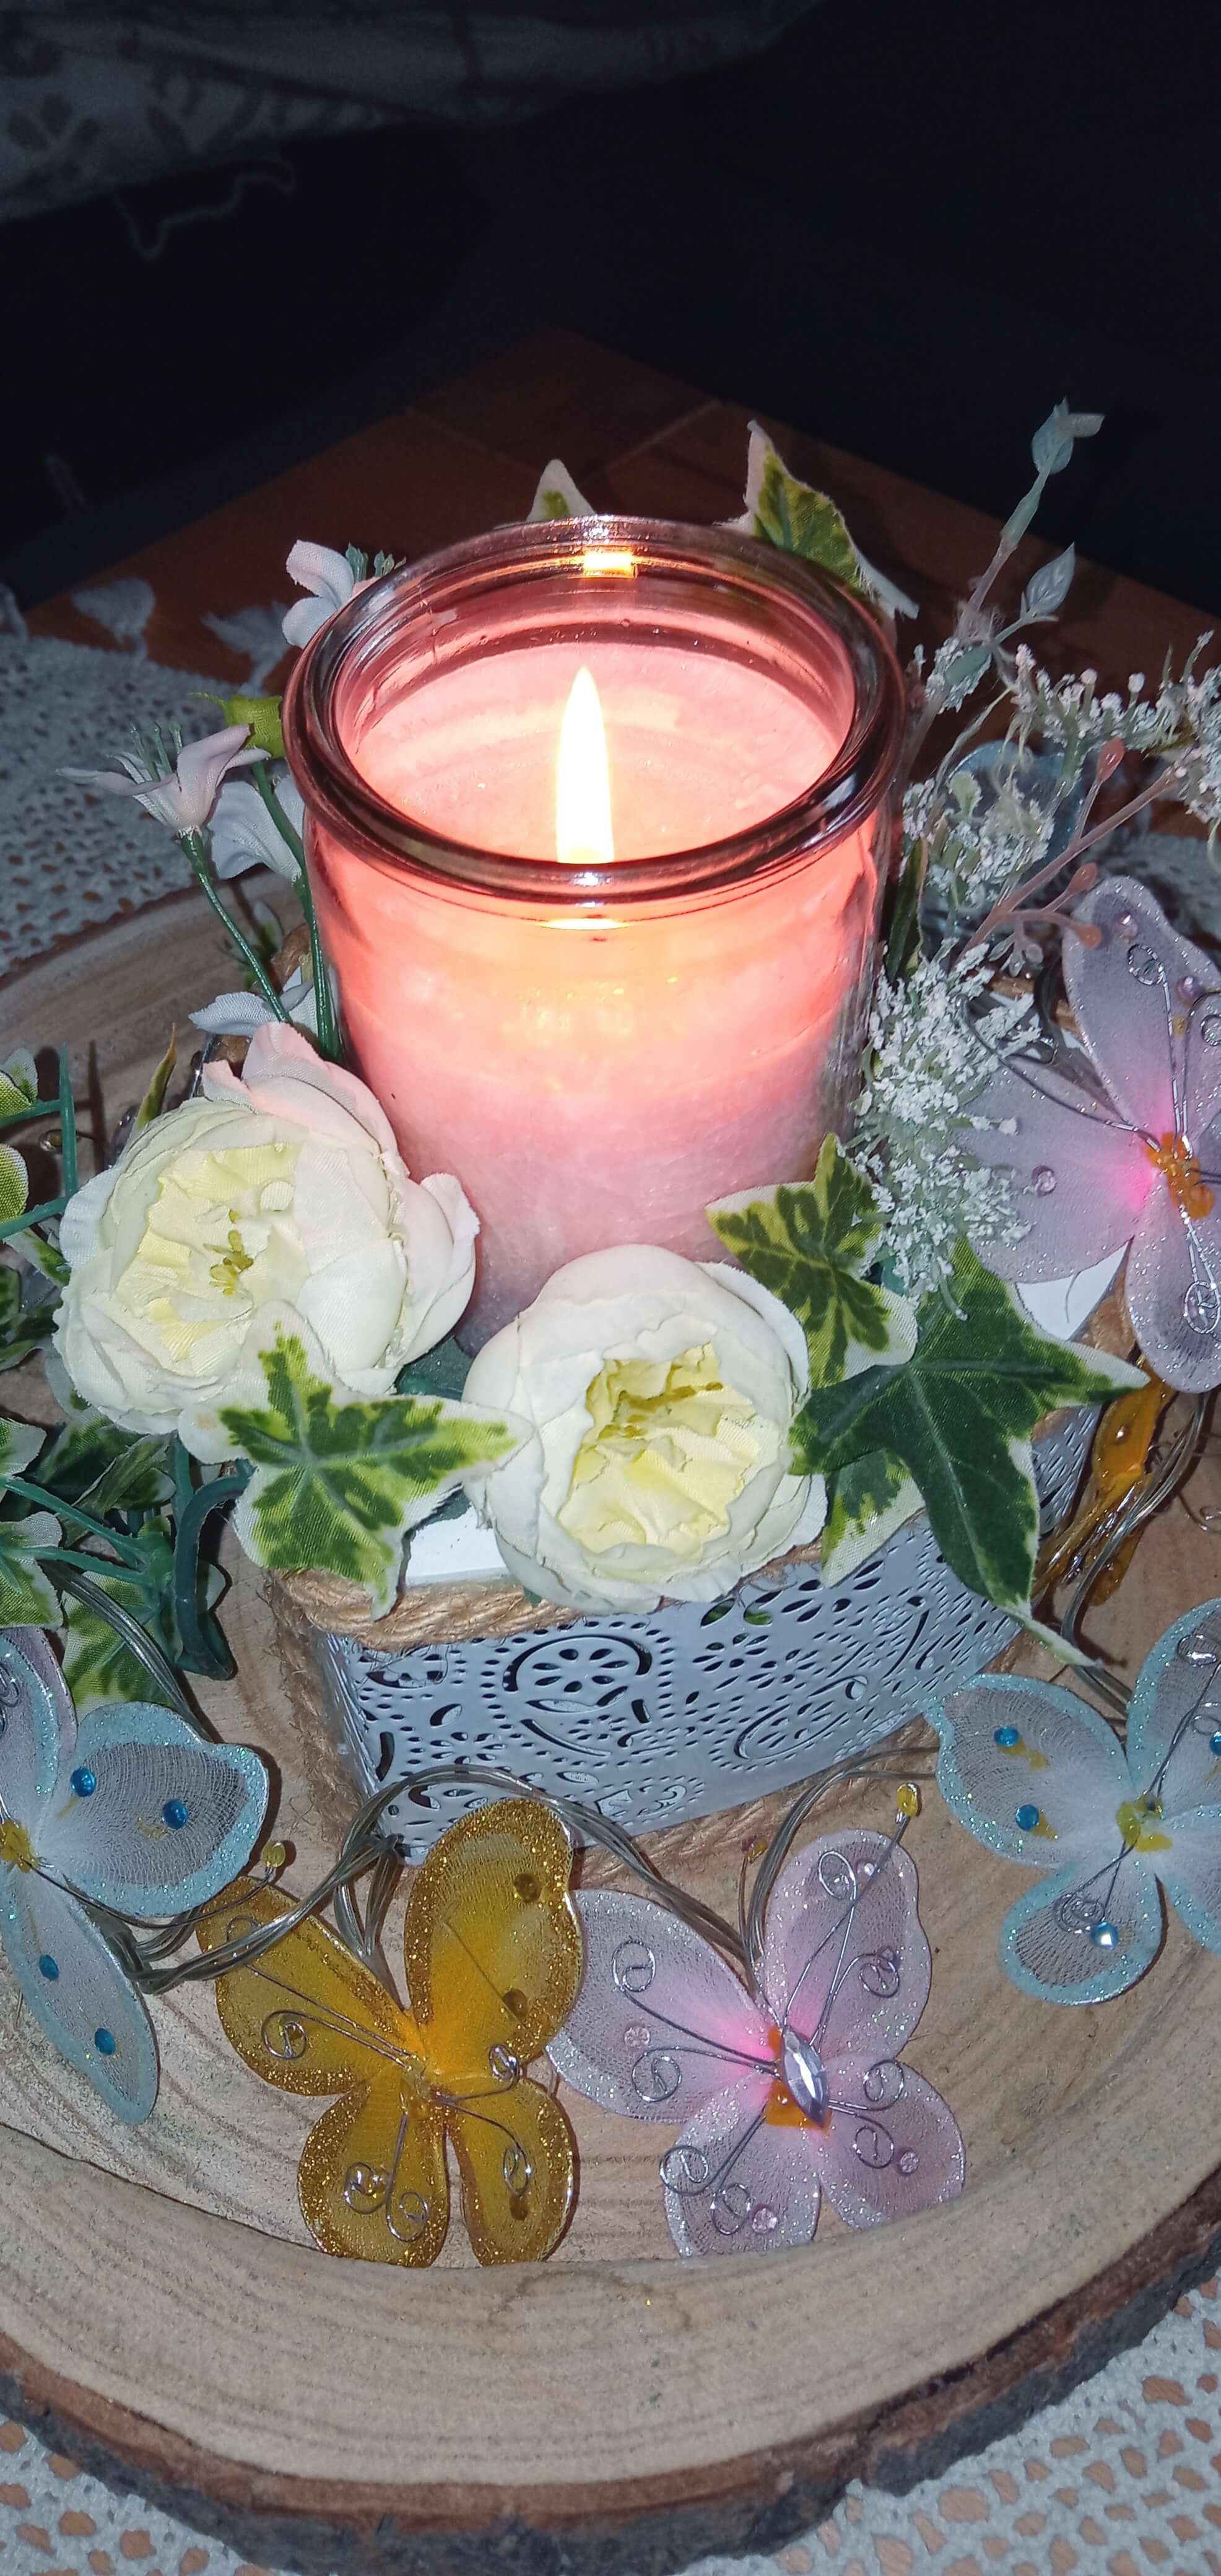 Brennende Kerze auf einer Holzscheibe, geschmückt mit Blumen und einer Kette mit bunten Schmetterlingen